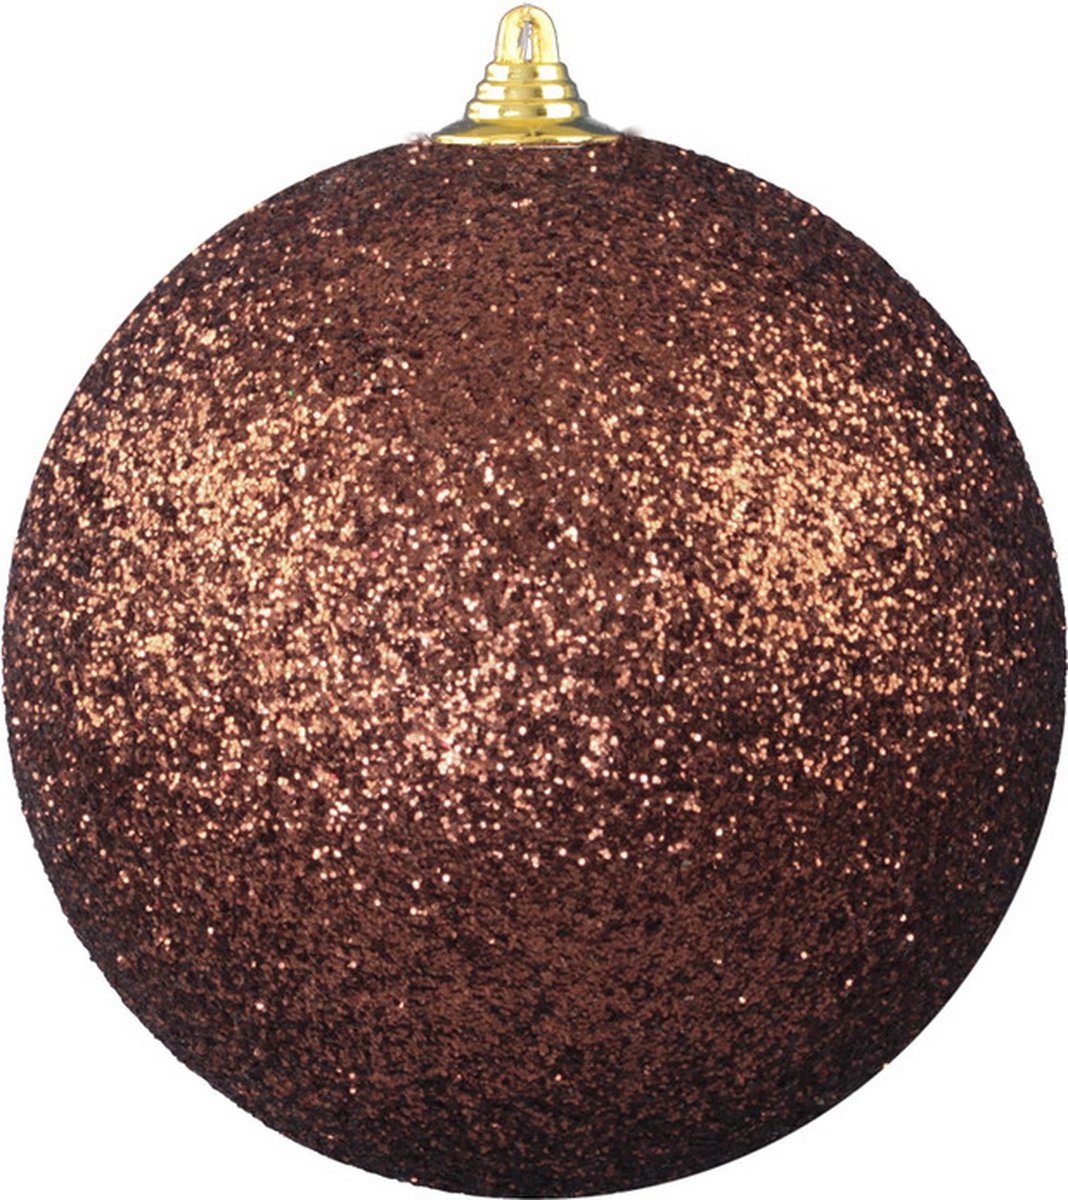 2x Bruine grote decoratie glitter kerstballen 25 cm - hangdecoratie / boomversiering glitter kerstballen